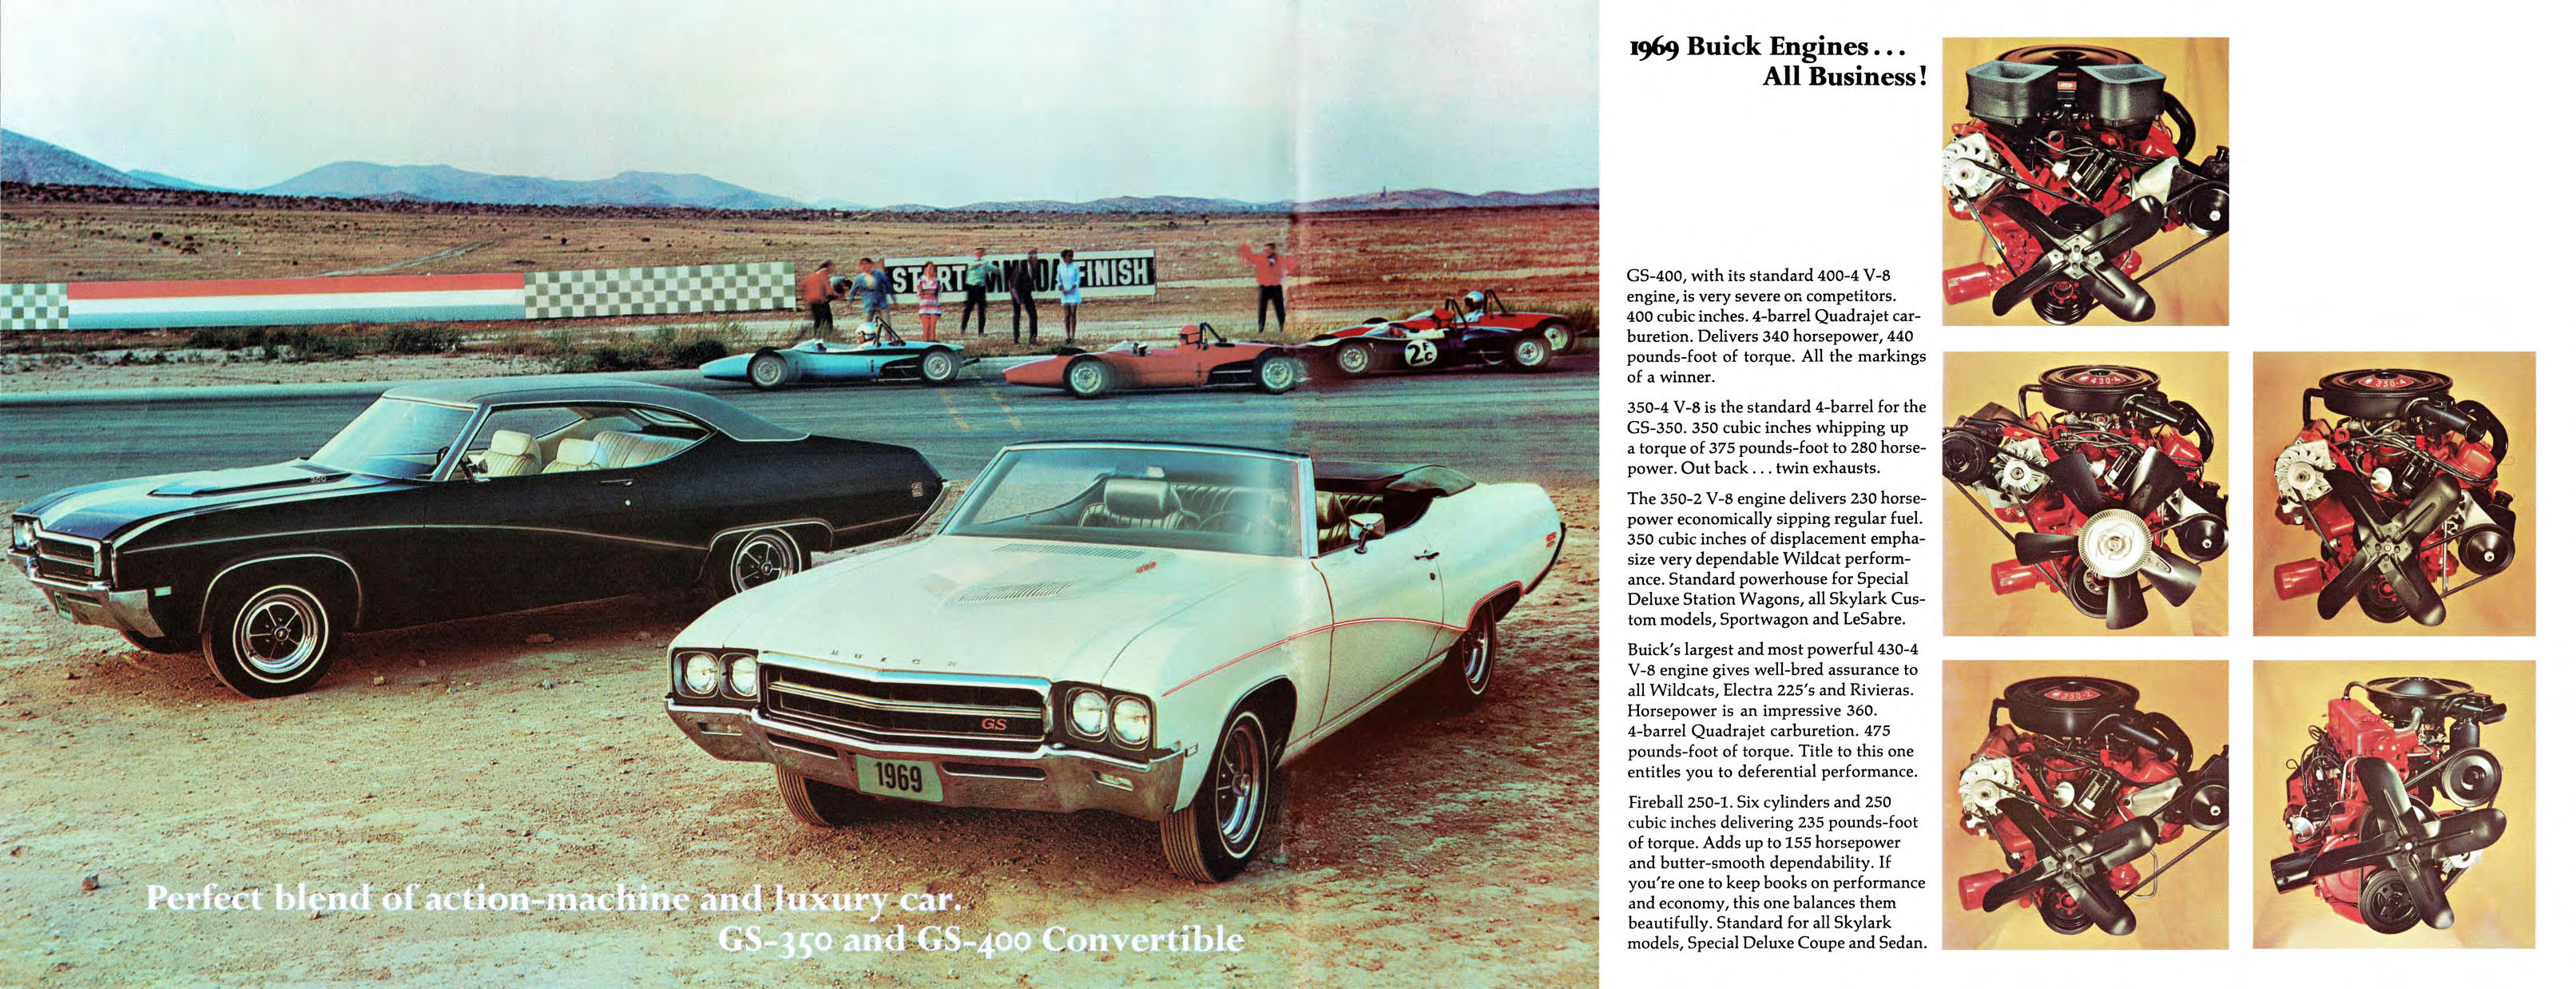 1969 Buick Full Line Mailer-11-12